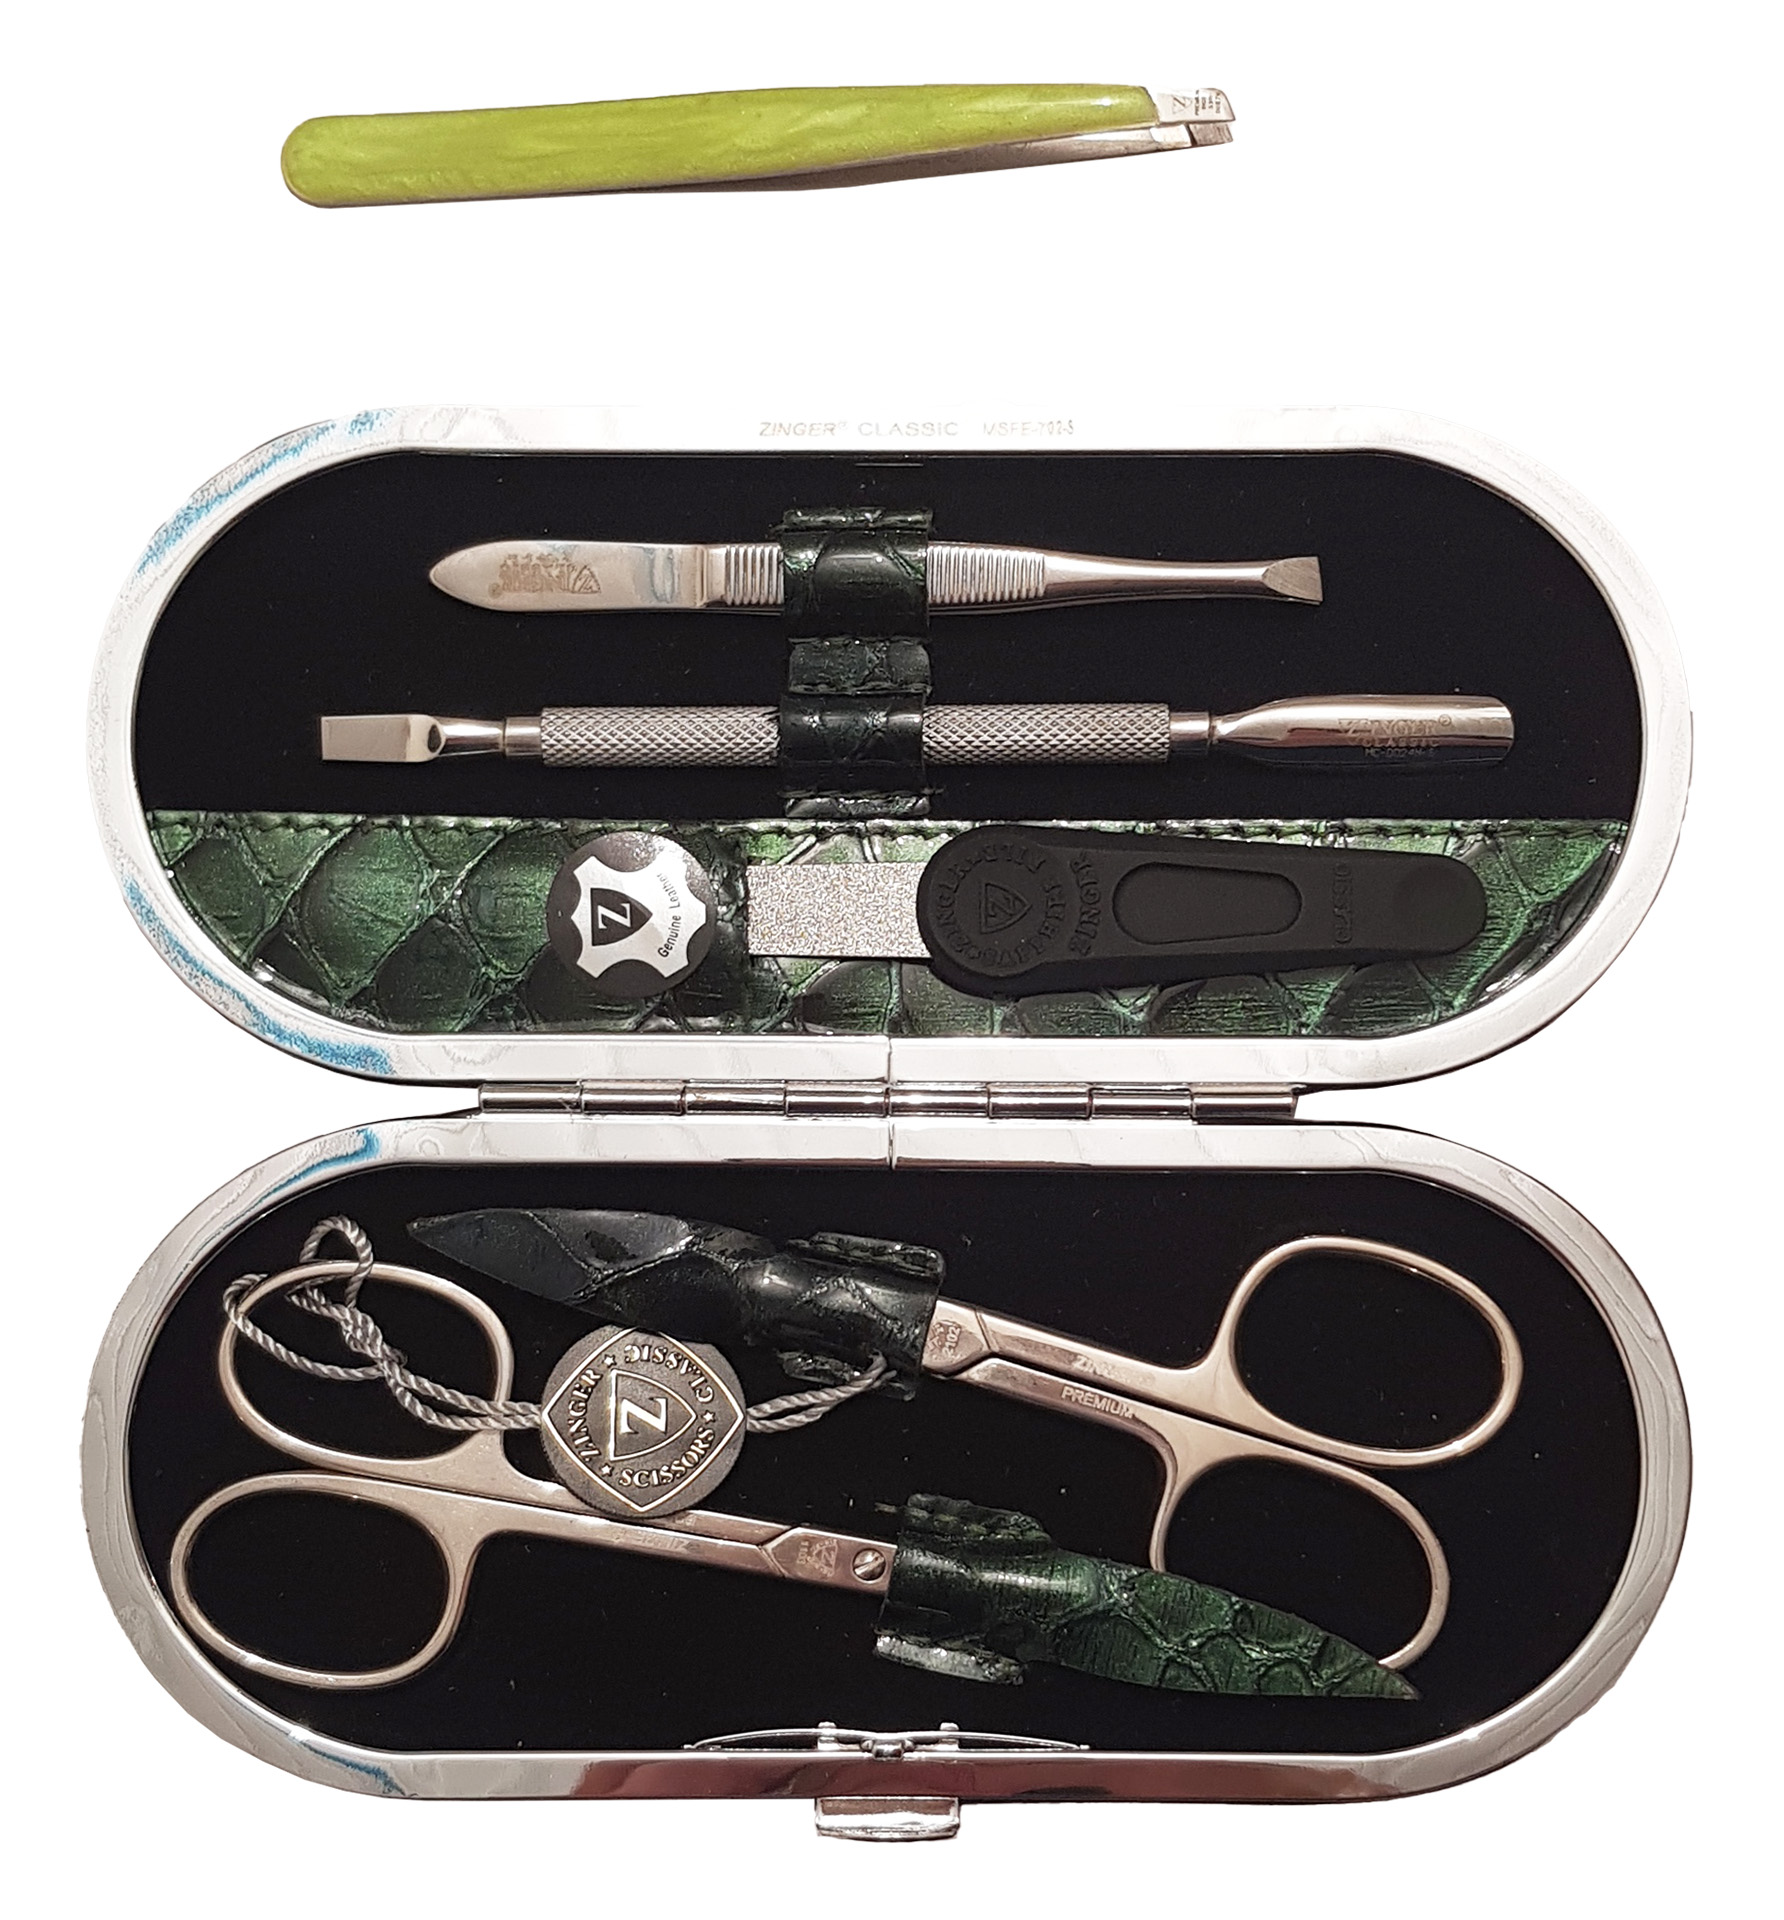 Маникюрный набор Premium-качества Zinger MSFE-702-3 S, 5 предметов + пинцет, тёмно-зелёный набор для магии юный волшебник очки палочка